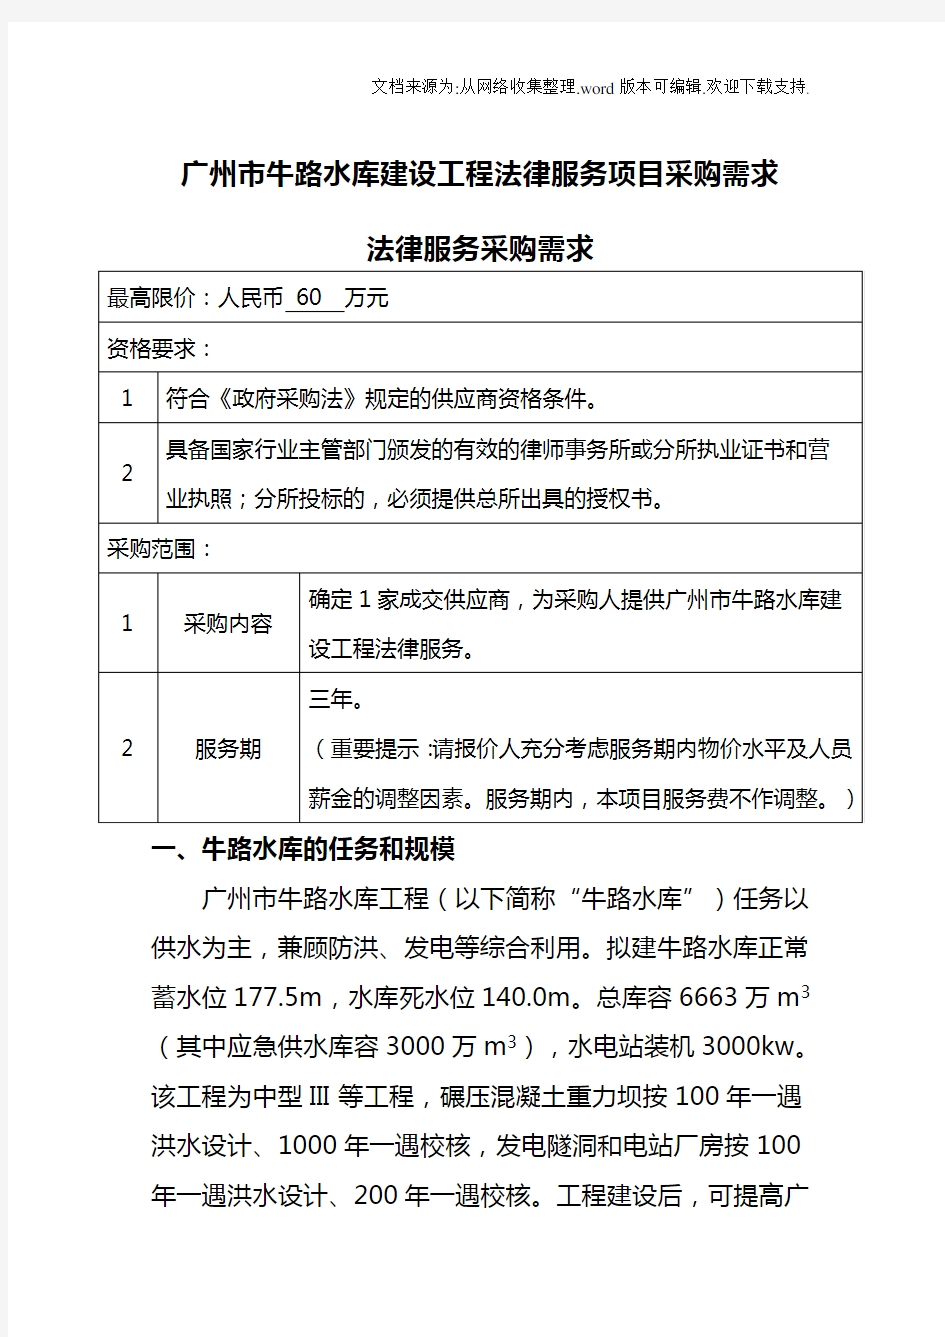 广州牛路水库建设工程法律服务项目采购需求